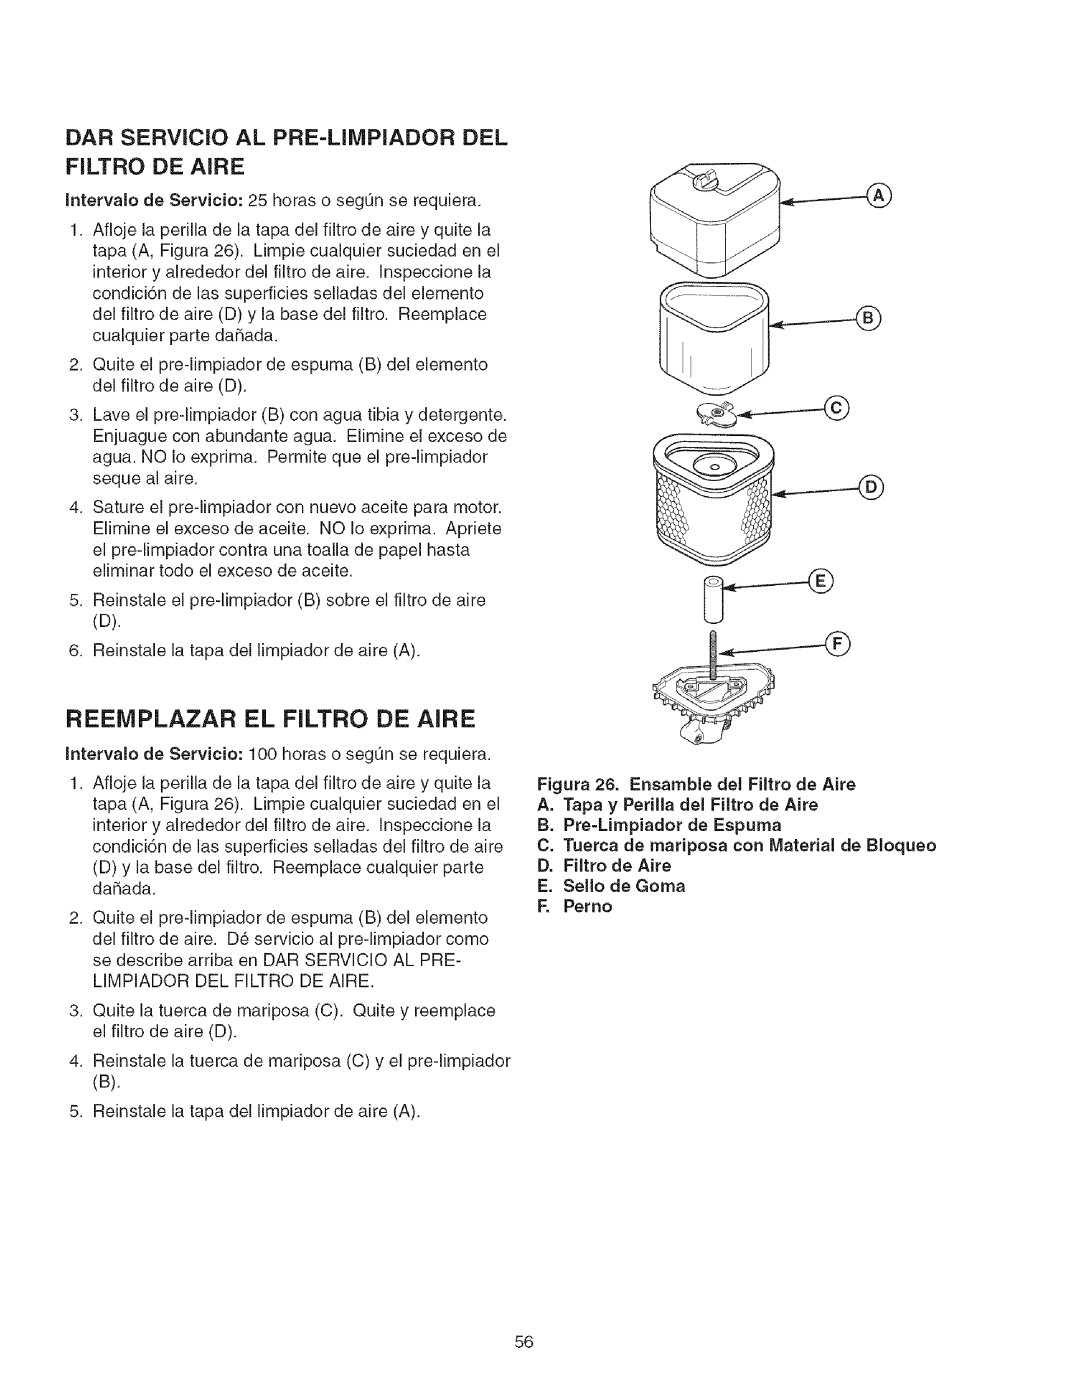 Craftsman 107.2777 manual Reeiviplazar El Filtro De Aire, DAR SERVlCIO AL PRE-LIIVlPIADOR DEL, B. Pre-Limpiador de Espuma 